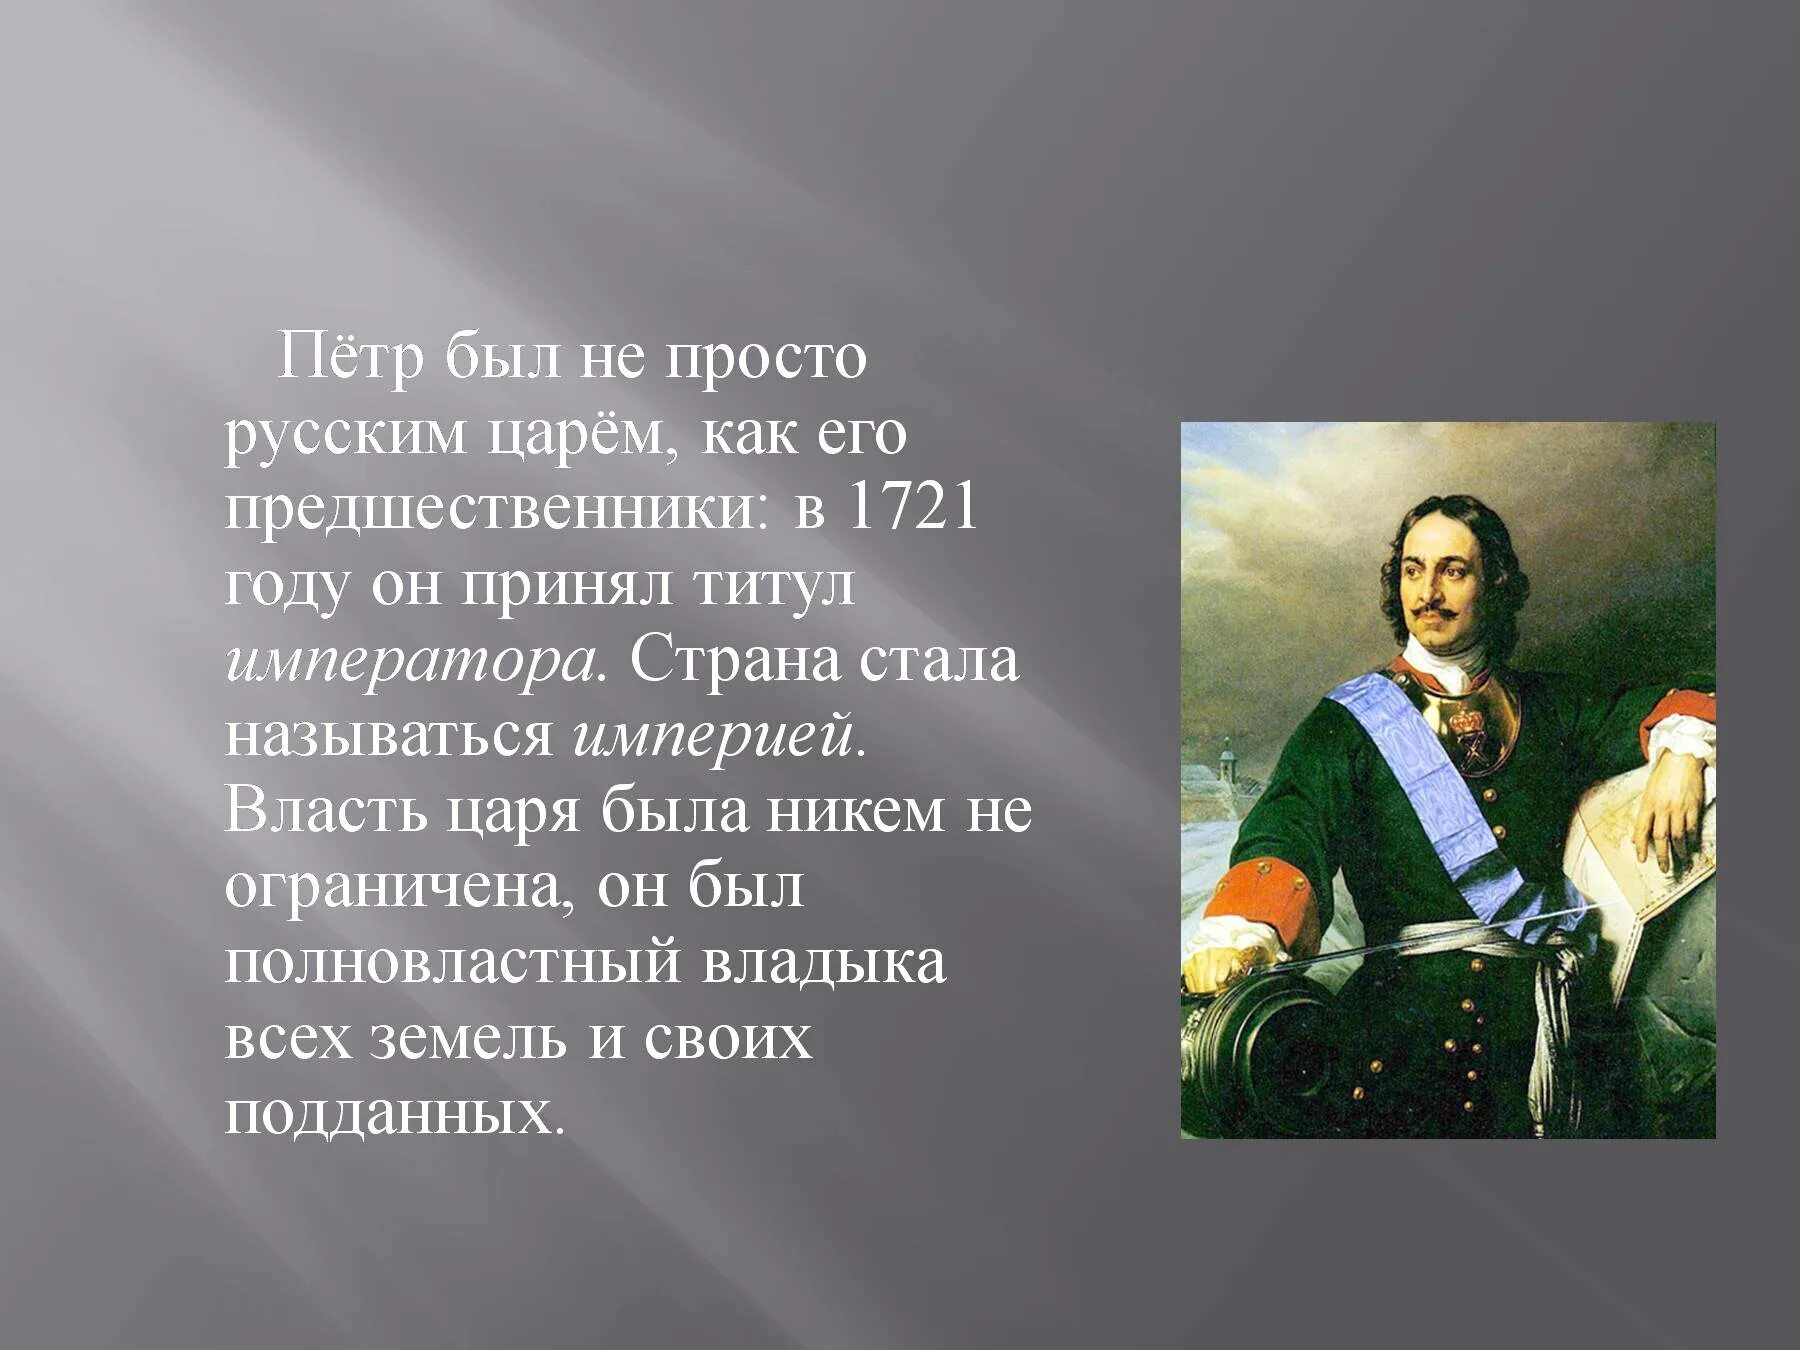 Рассказ про петра первого. Проект про Петра Великого.